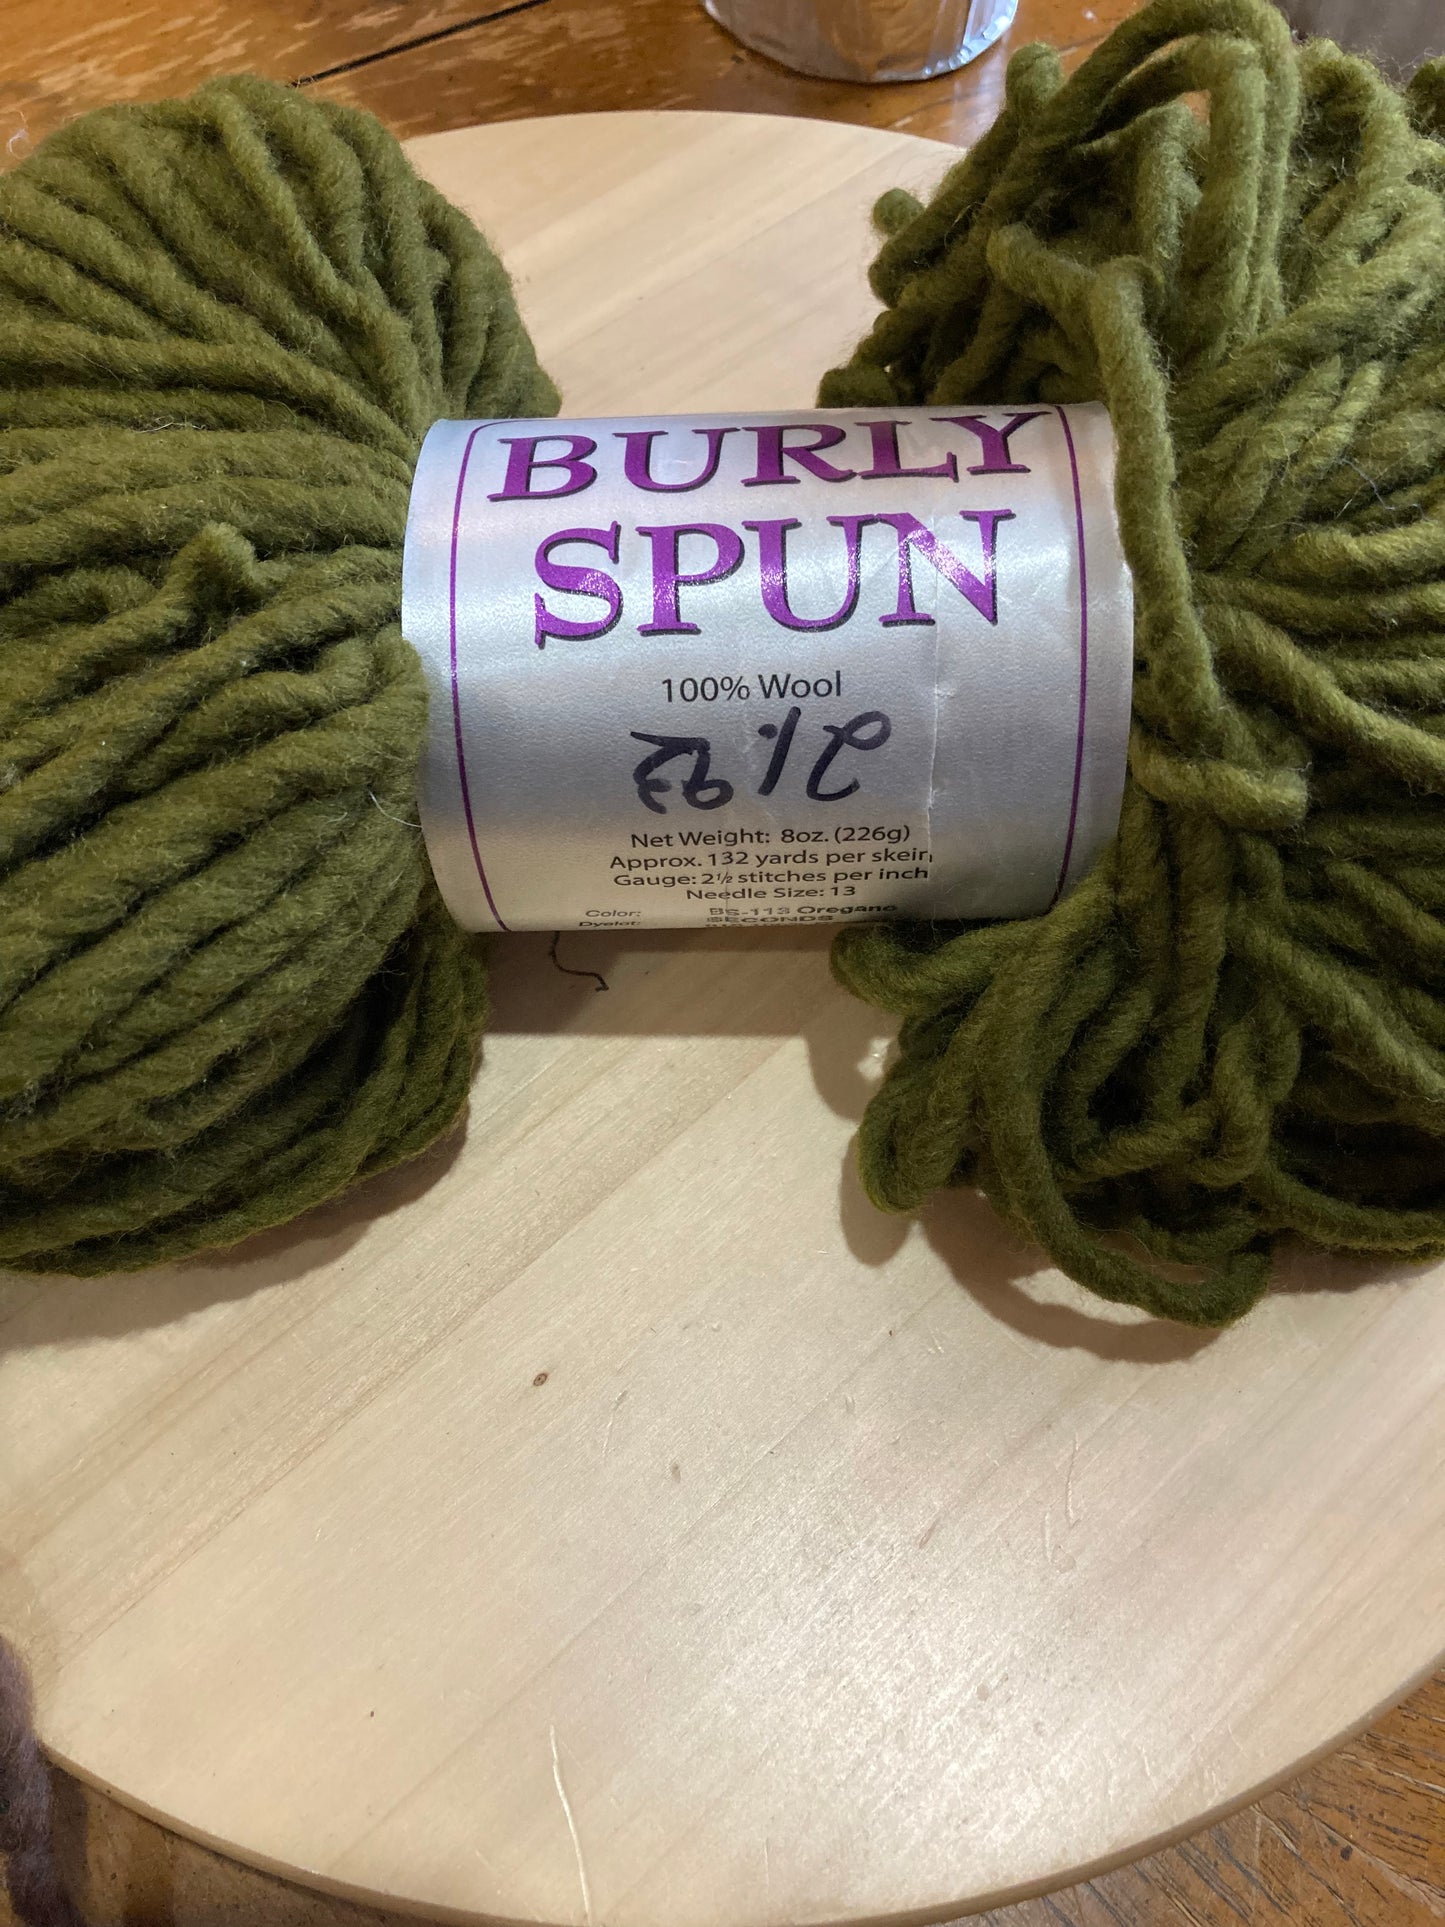 Burly Spun 100% Wool